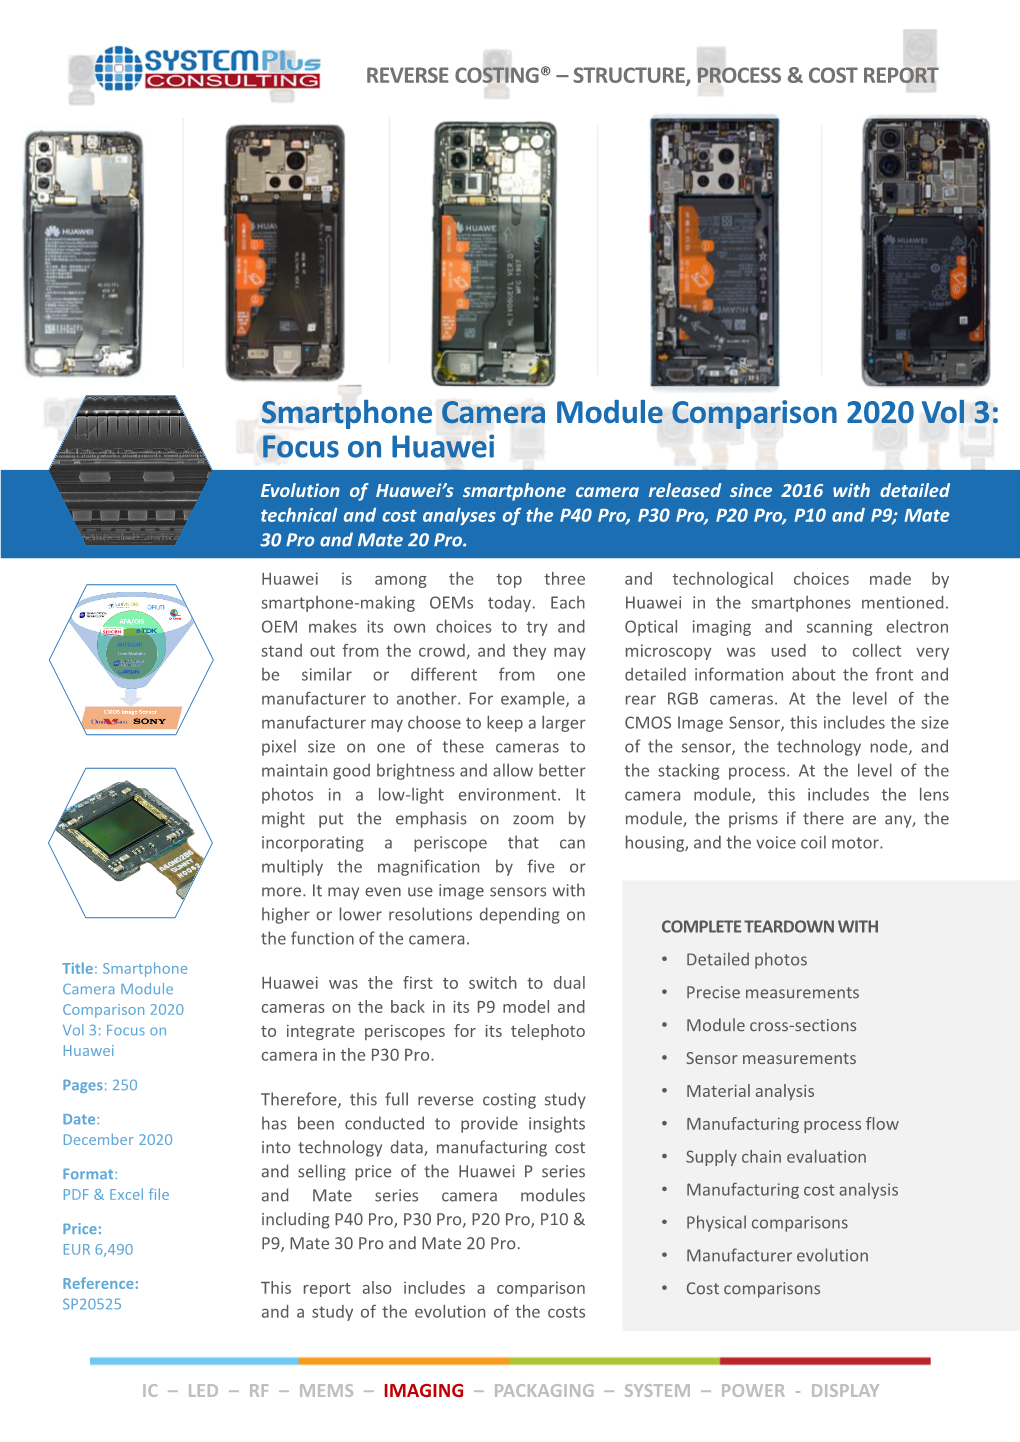 Smartphone Camera Module Comparison 2020 Vol 3